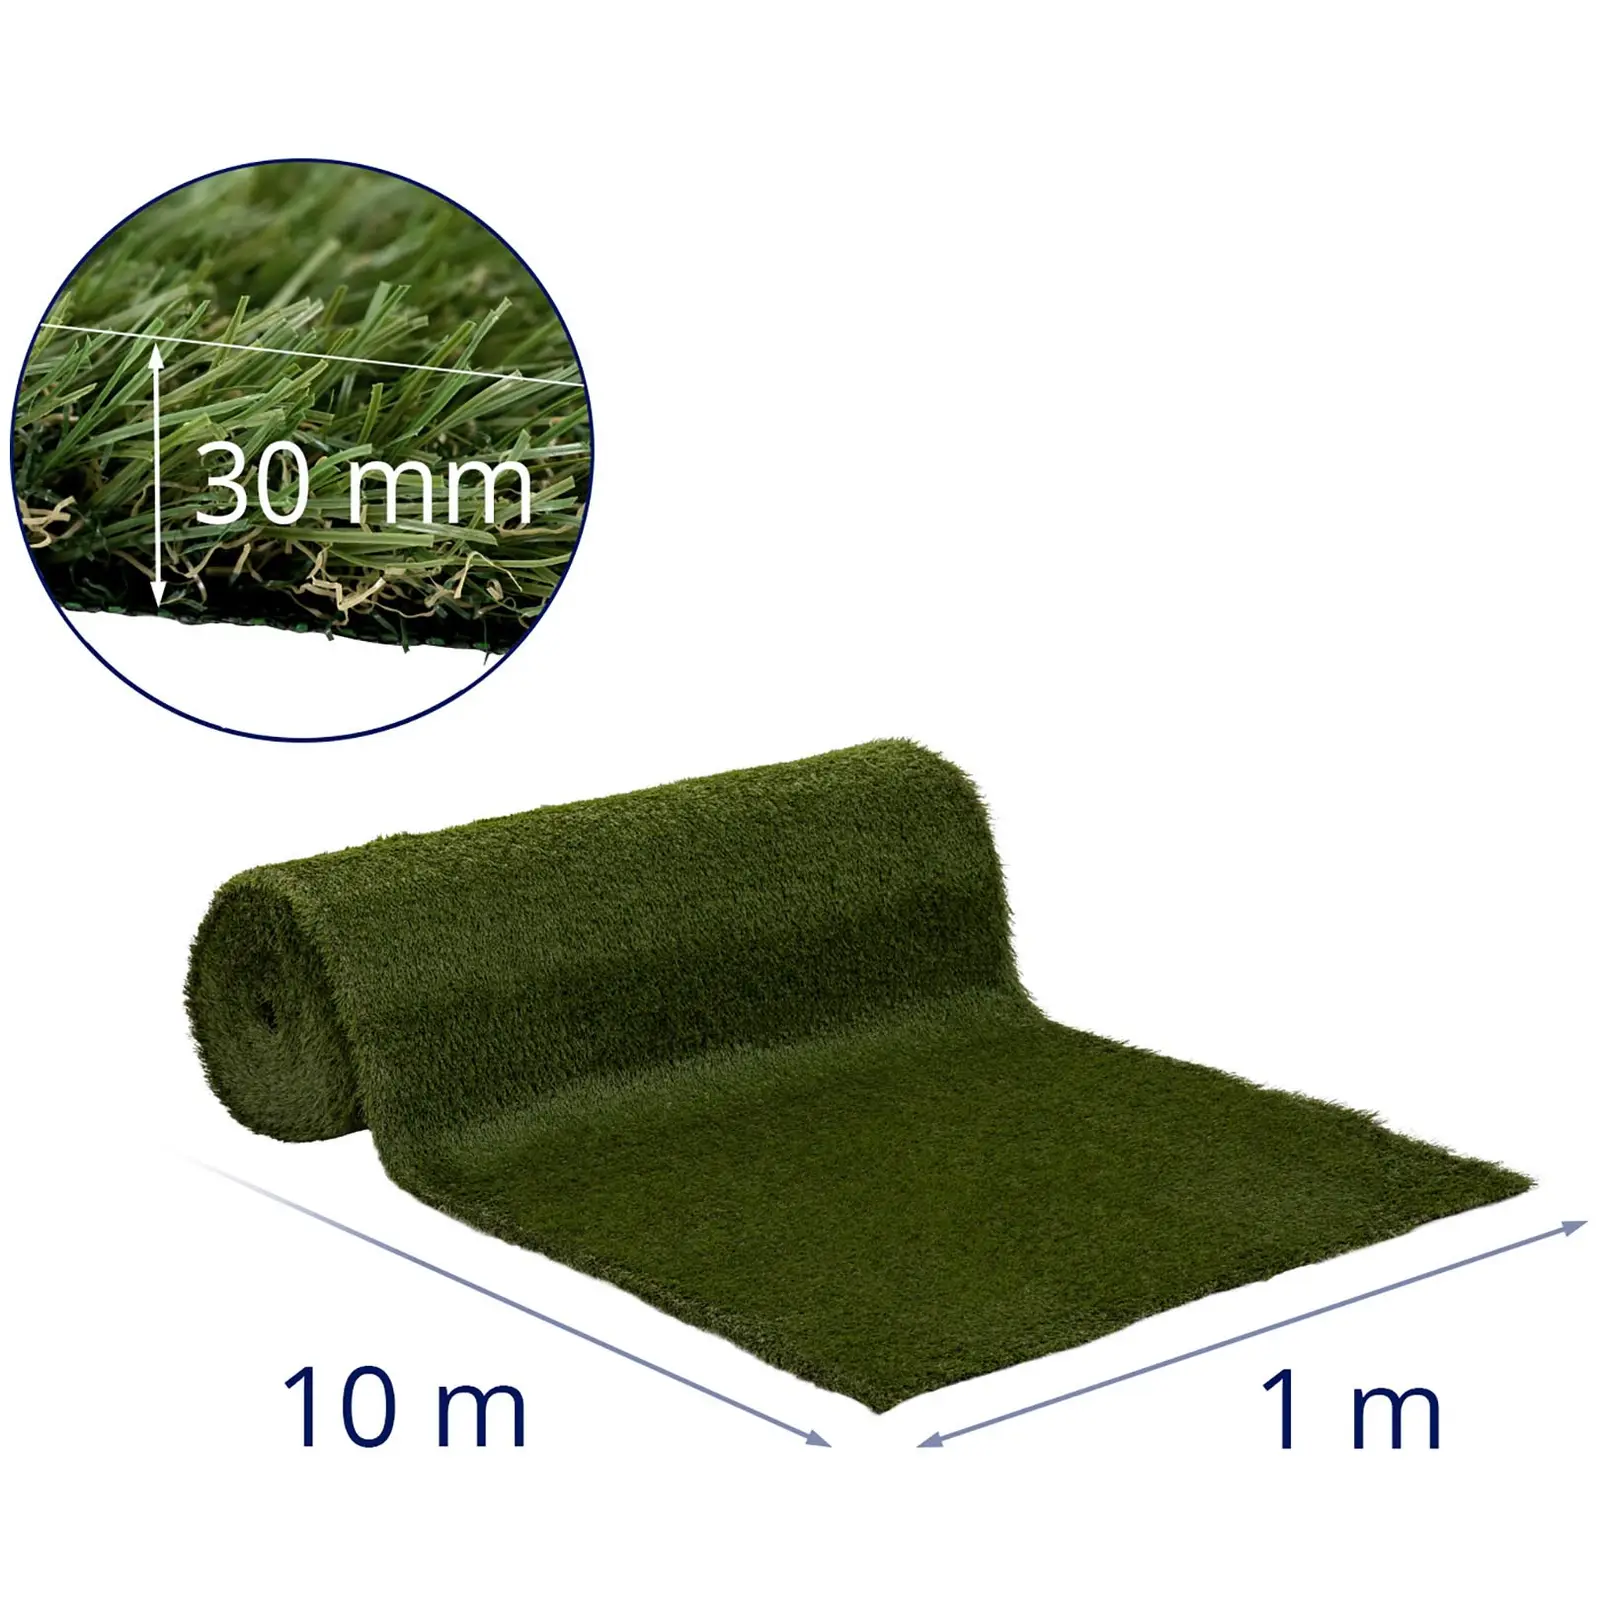 Umělý trávník - 1008 x 100 cm - výška: 30 mm - hustota stehů: 20/10 cm - odolný proti UV záření